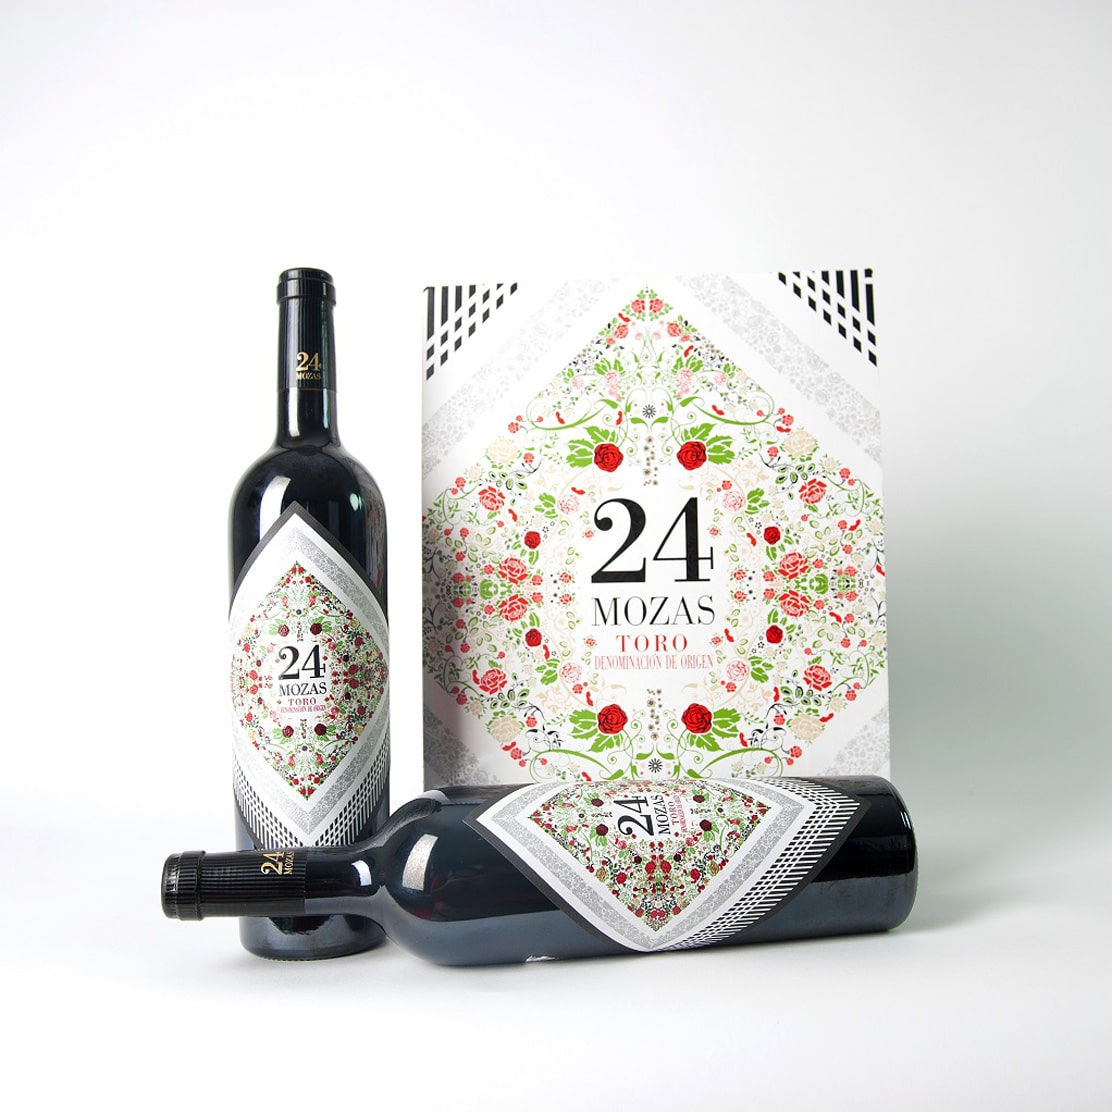 Impresión de etiqueta y packaging de vino 24 mozas